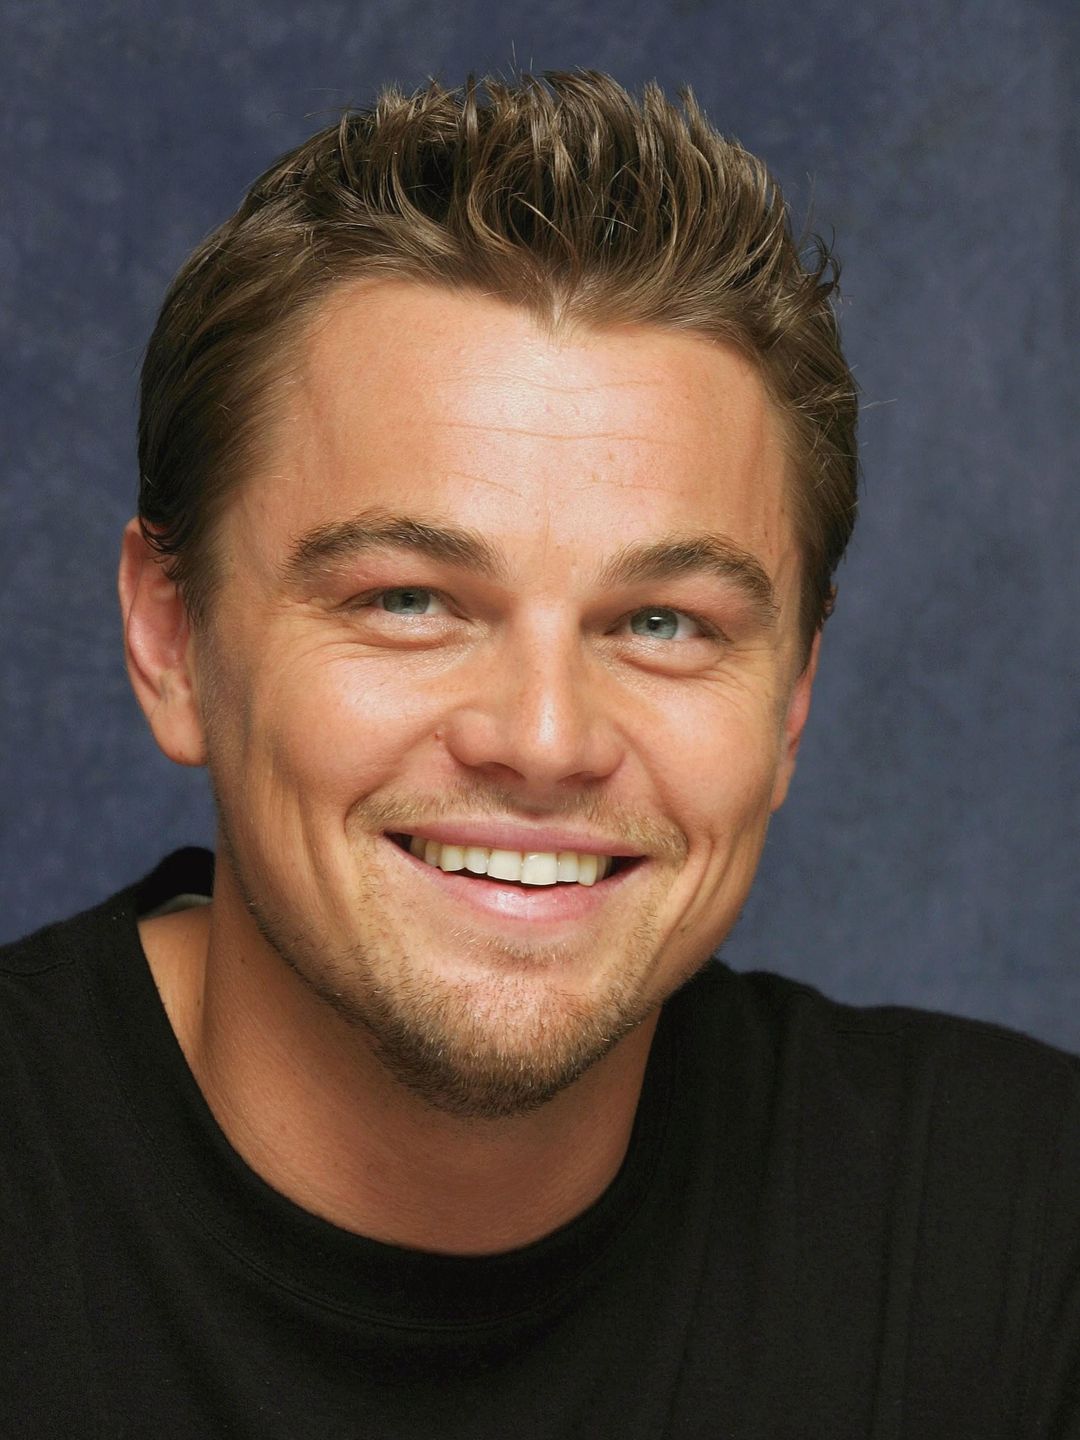 Leonardo DiCaprio way to fame